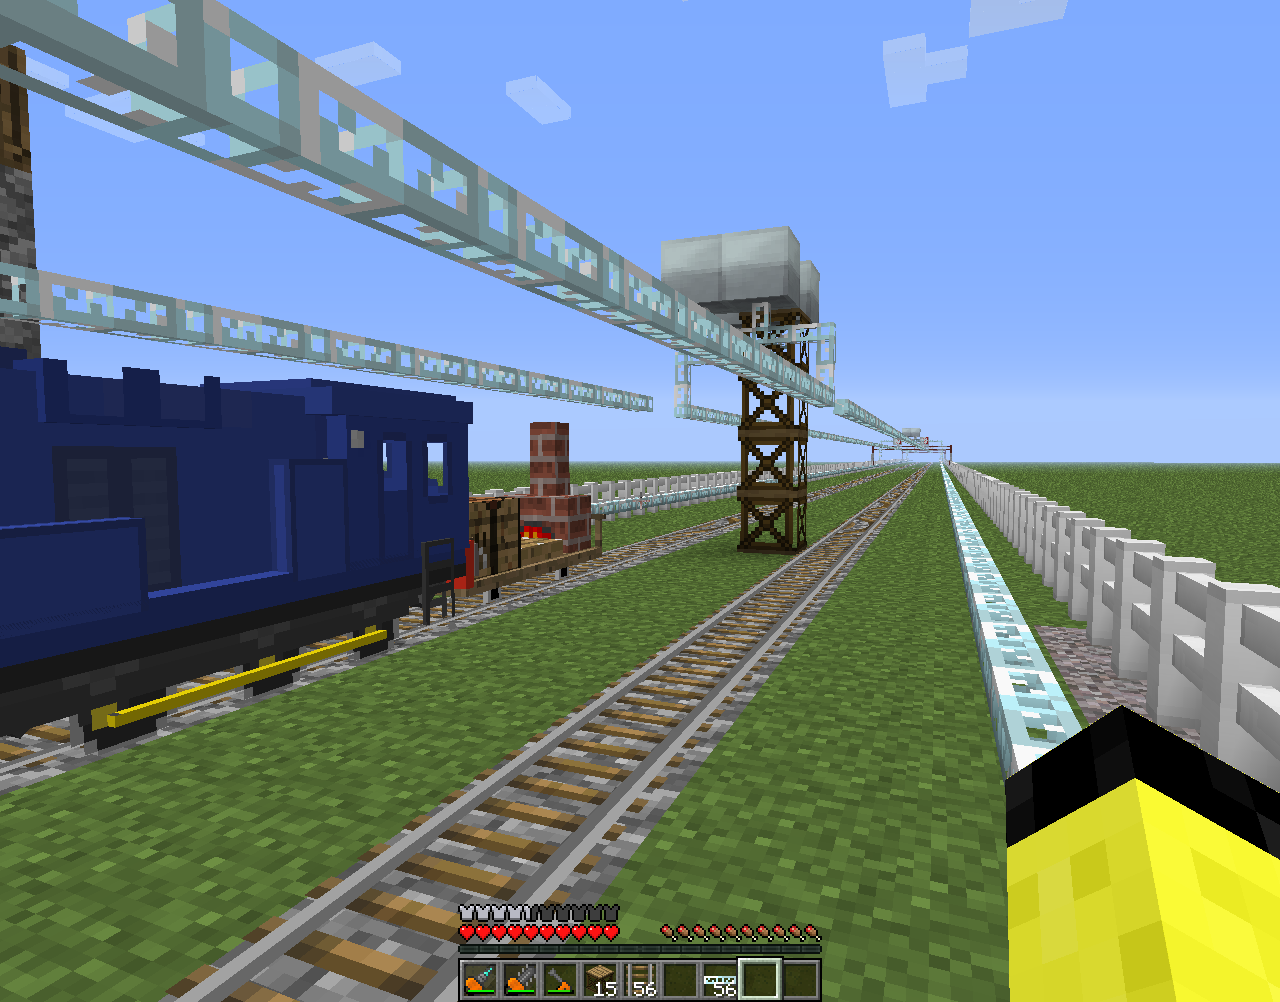 Игра майнкрафт поезда. Traincraft 1.12.2. Real Train Mod 1.7.10 РЖД. Train Craft Mod 1.12.2. Immersive railroading контактная сеть.